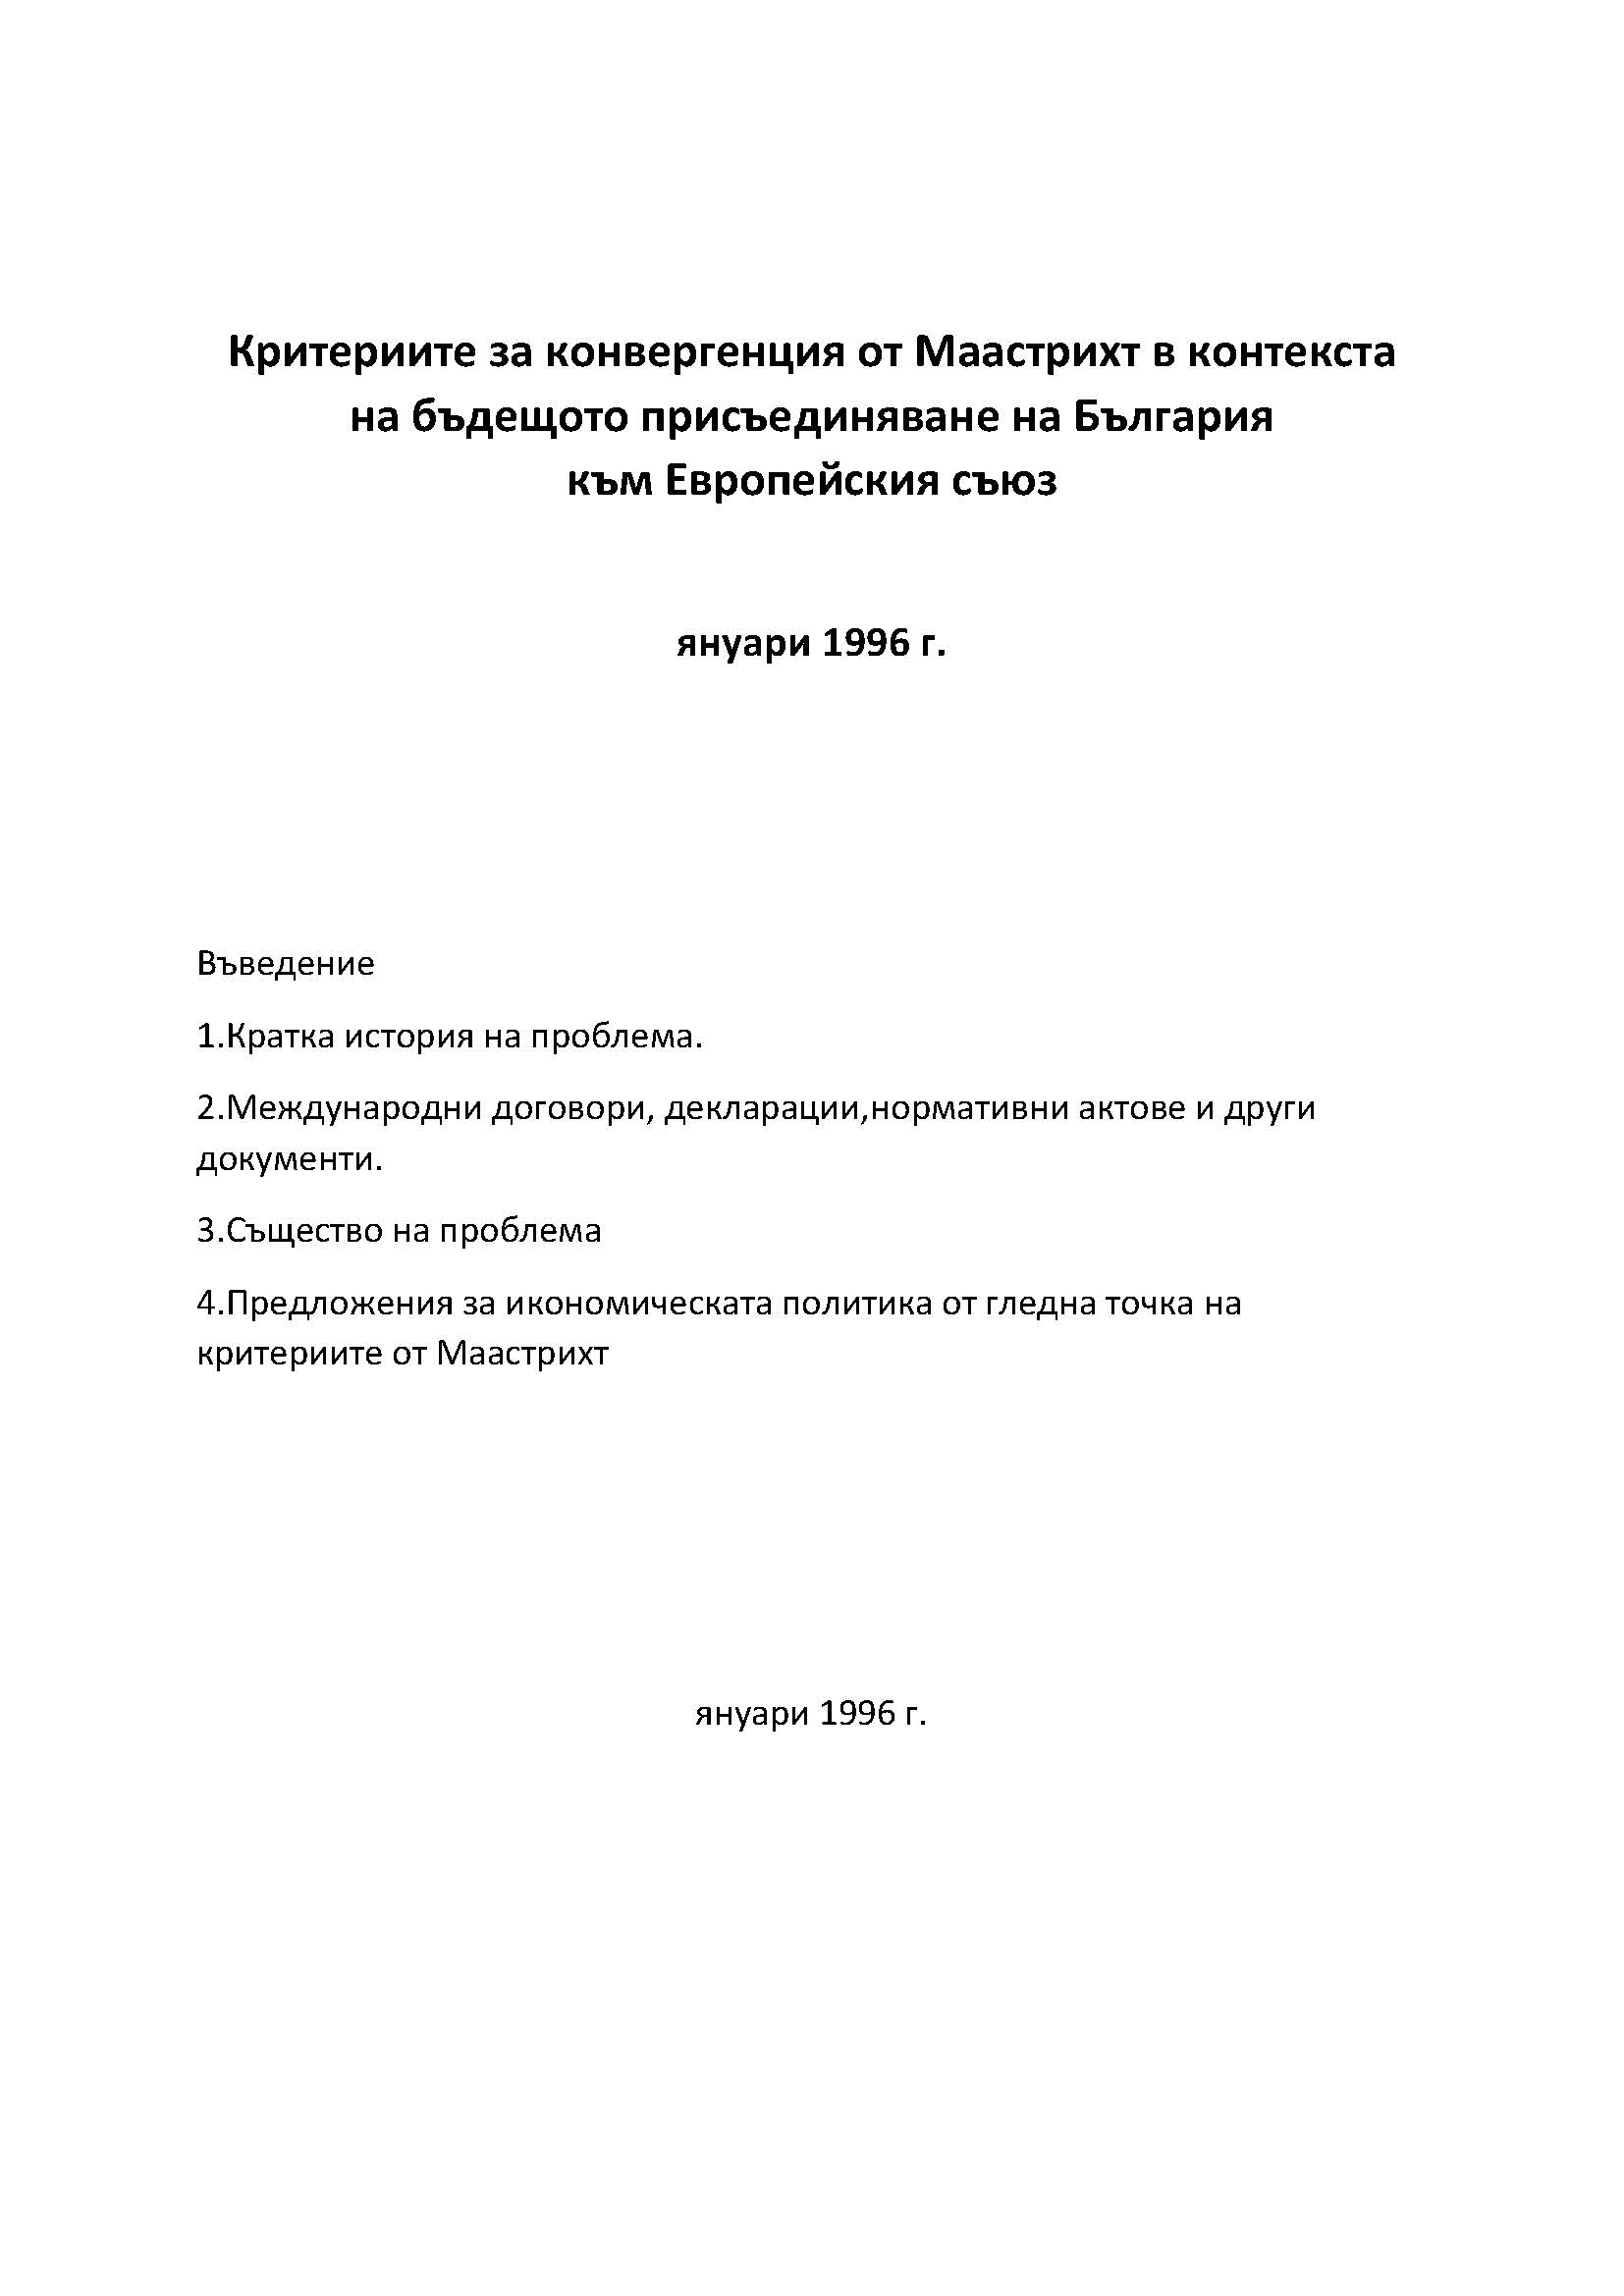 Критериите за конвергенция от Маастрихт в контекста на бъдещото присъединяване на България към Европейския съюз, януари 1996 г.